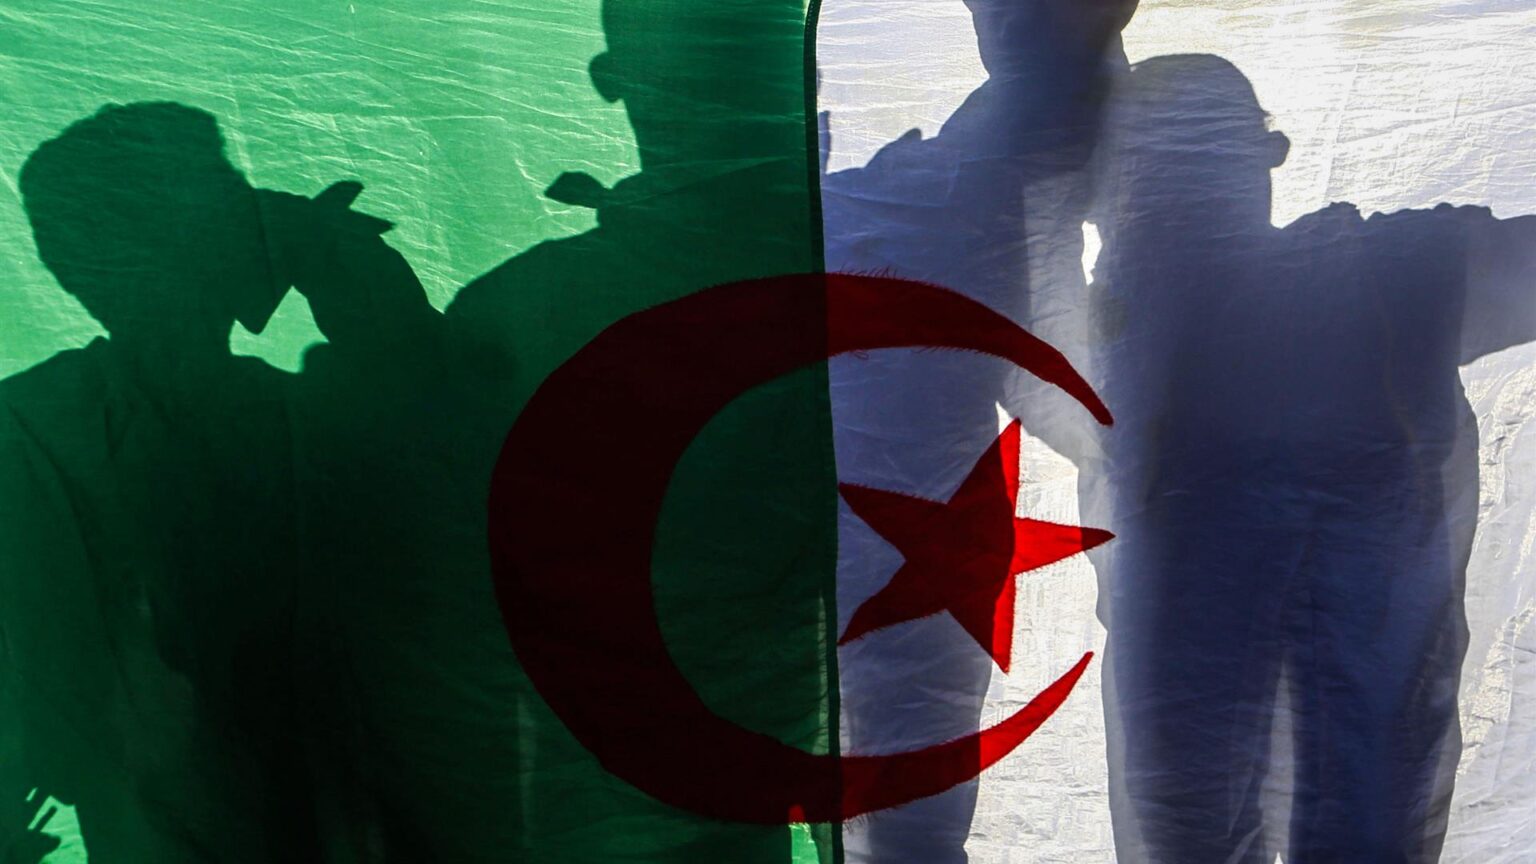 Argelia recula y afirma ahora que mantendrá las relaciones comerciales con España